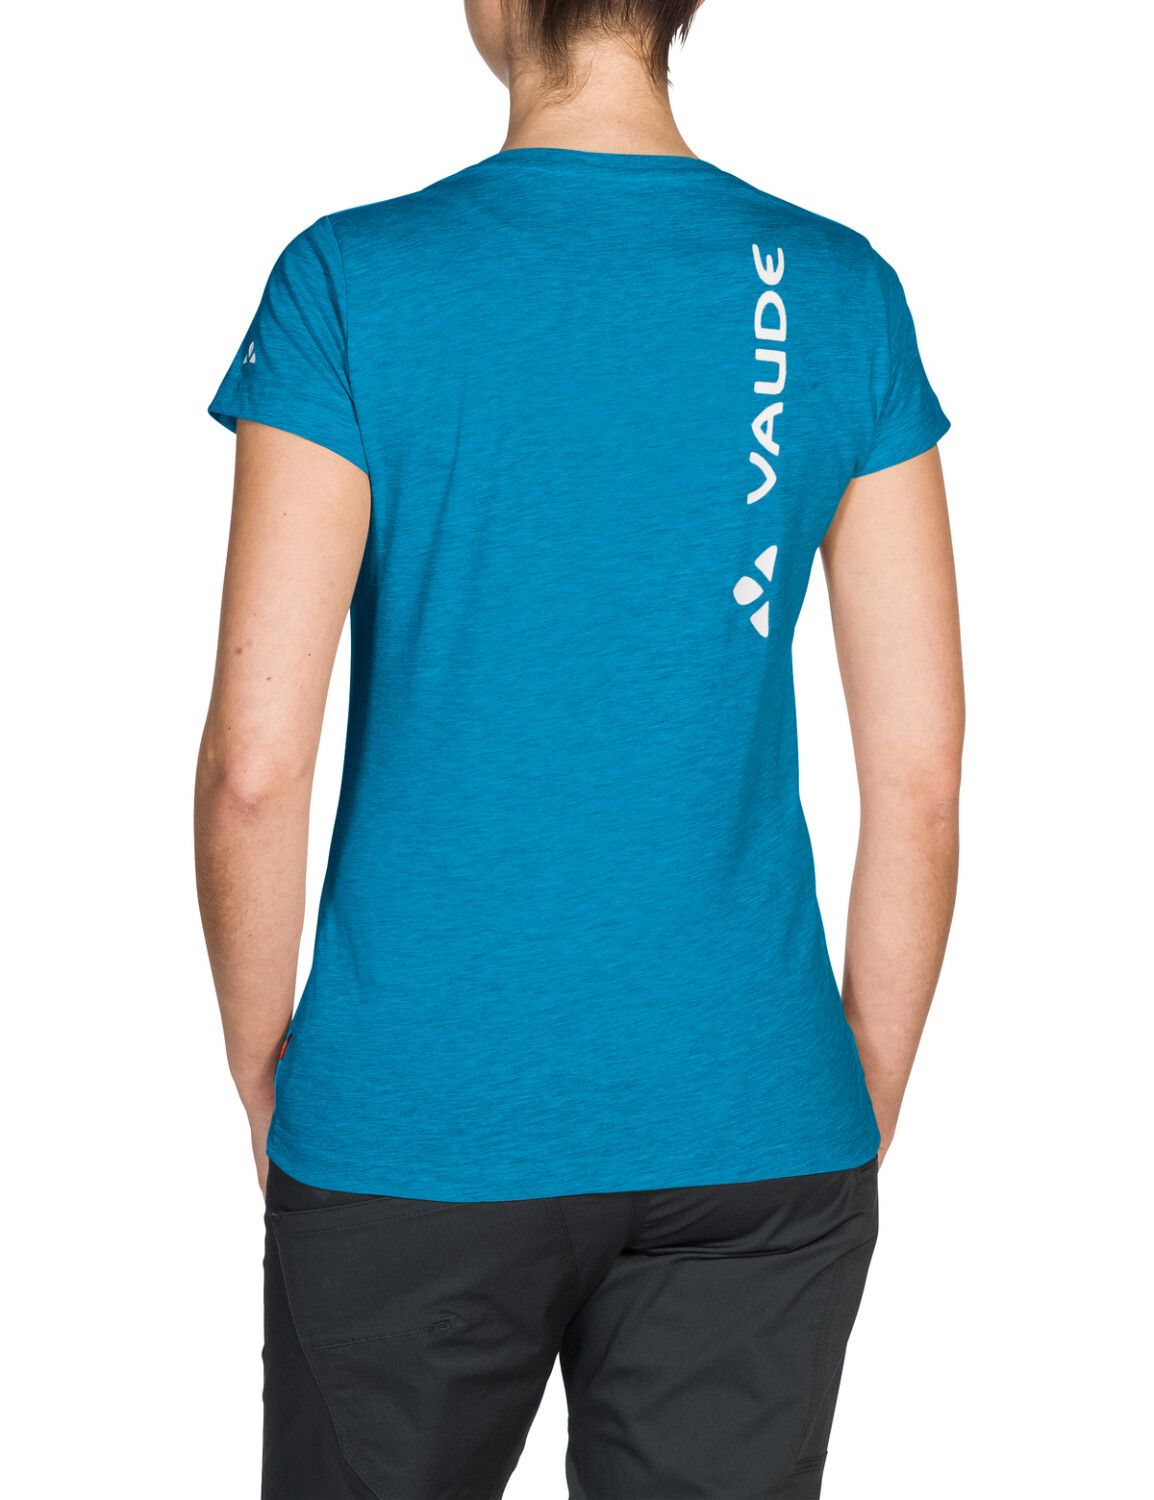 VAUDE Women's Brand Shirt (Bild 26)